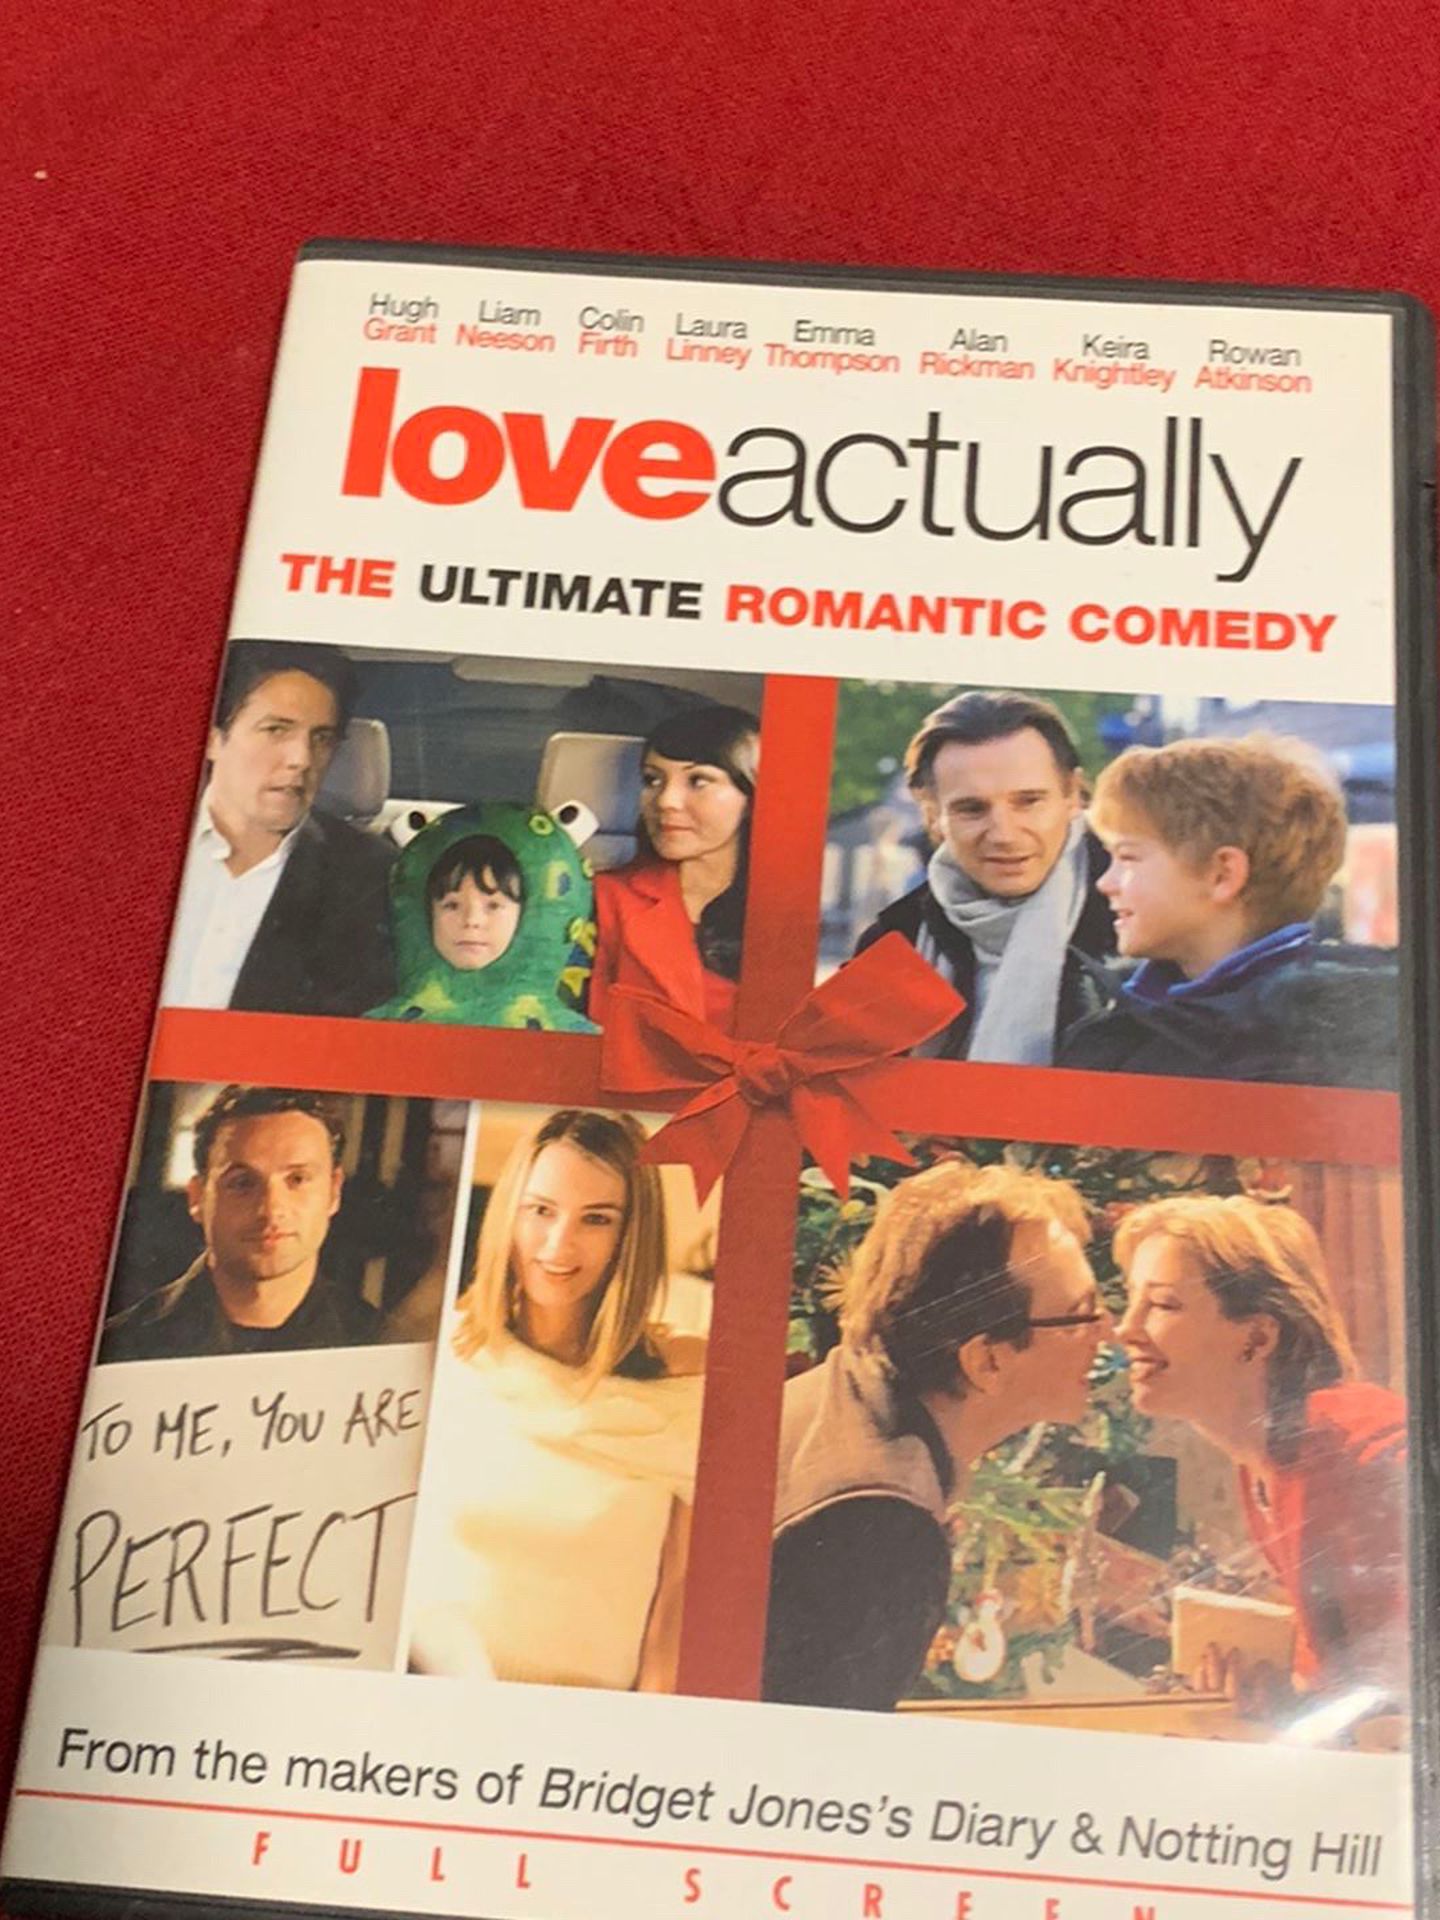 DVD - Love actually